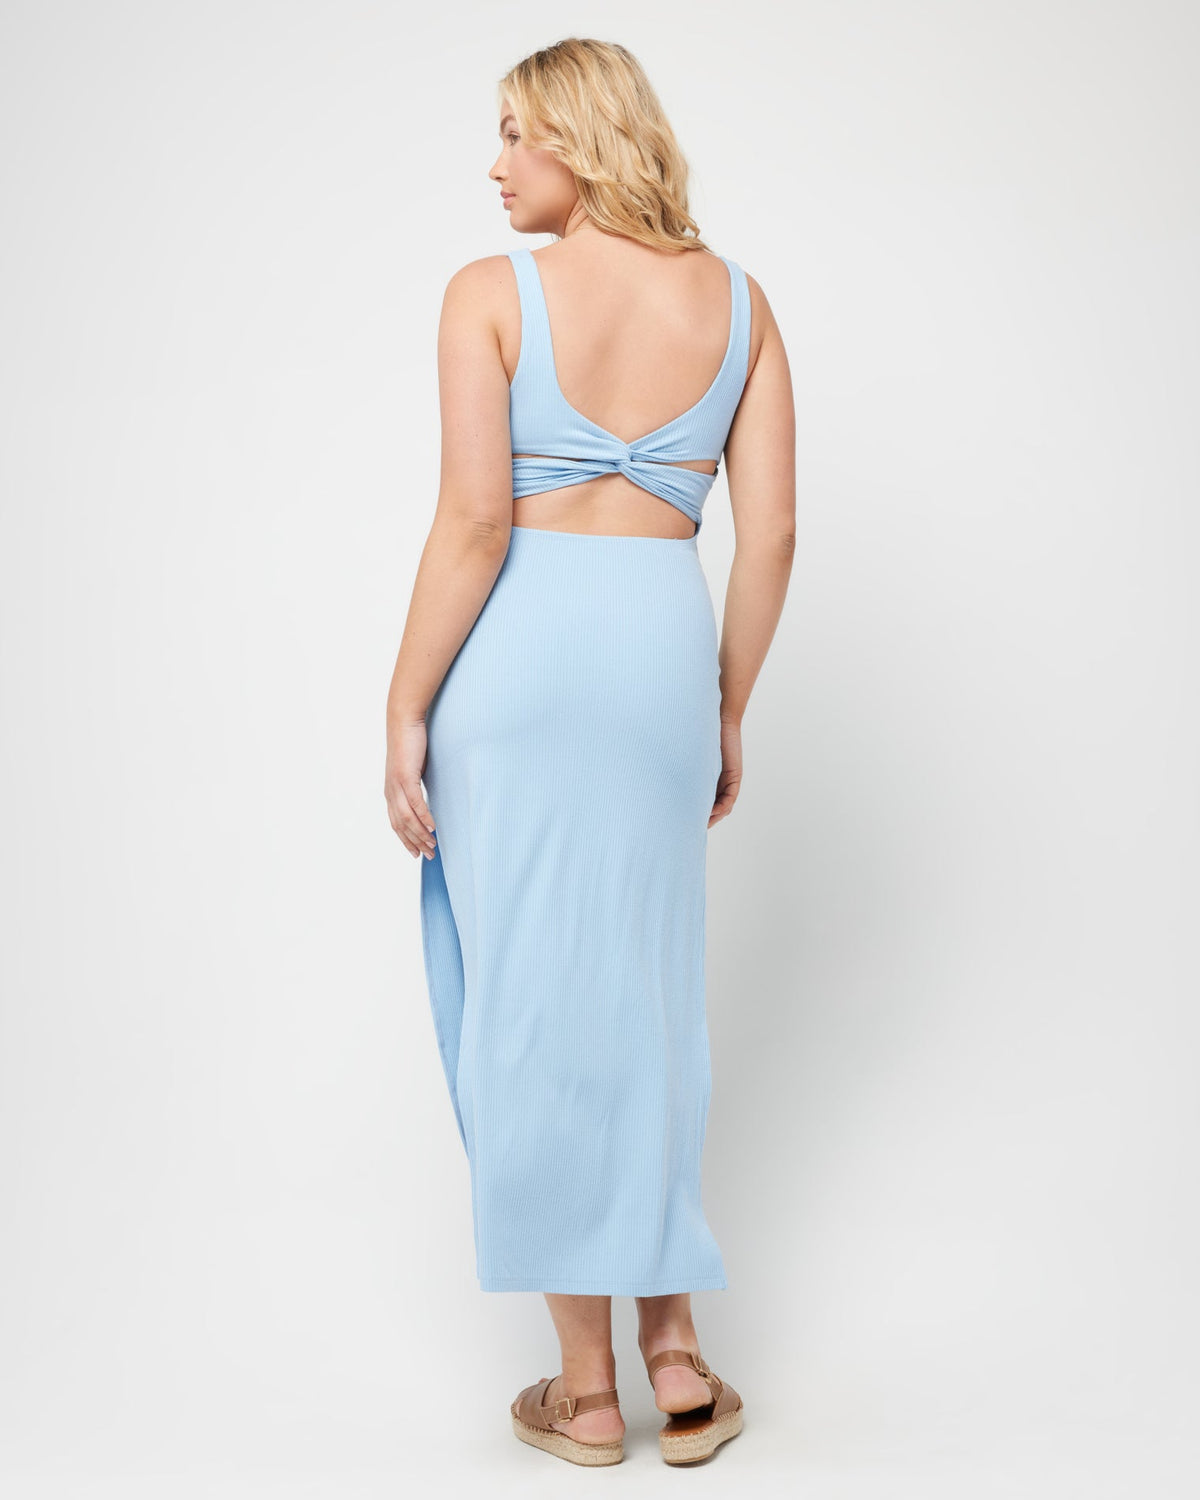 Mara Dress - Aura Aura | Model: Sydney (size: XL)